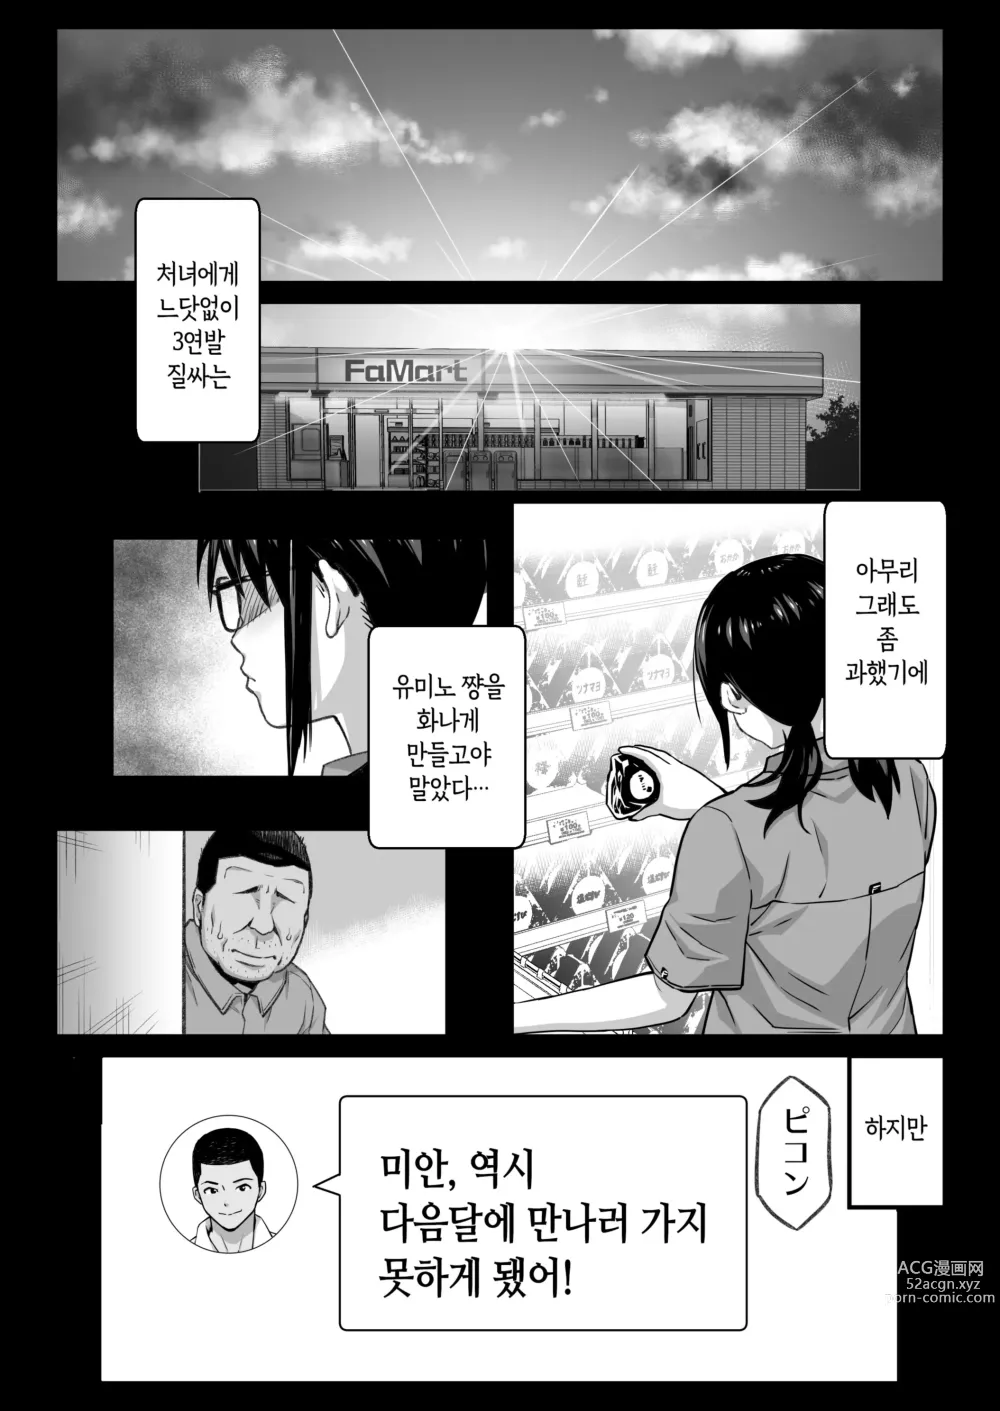 Page 74 of doujinshi 남친있는 알바생 유미노 쨩을 오늘도 점장은 노리고 있다